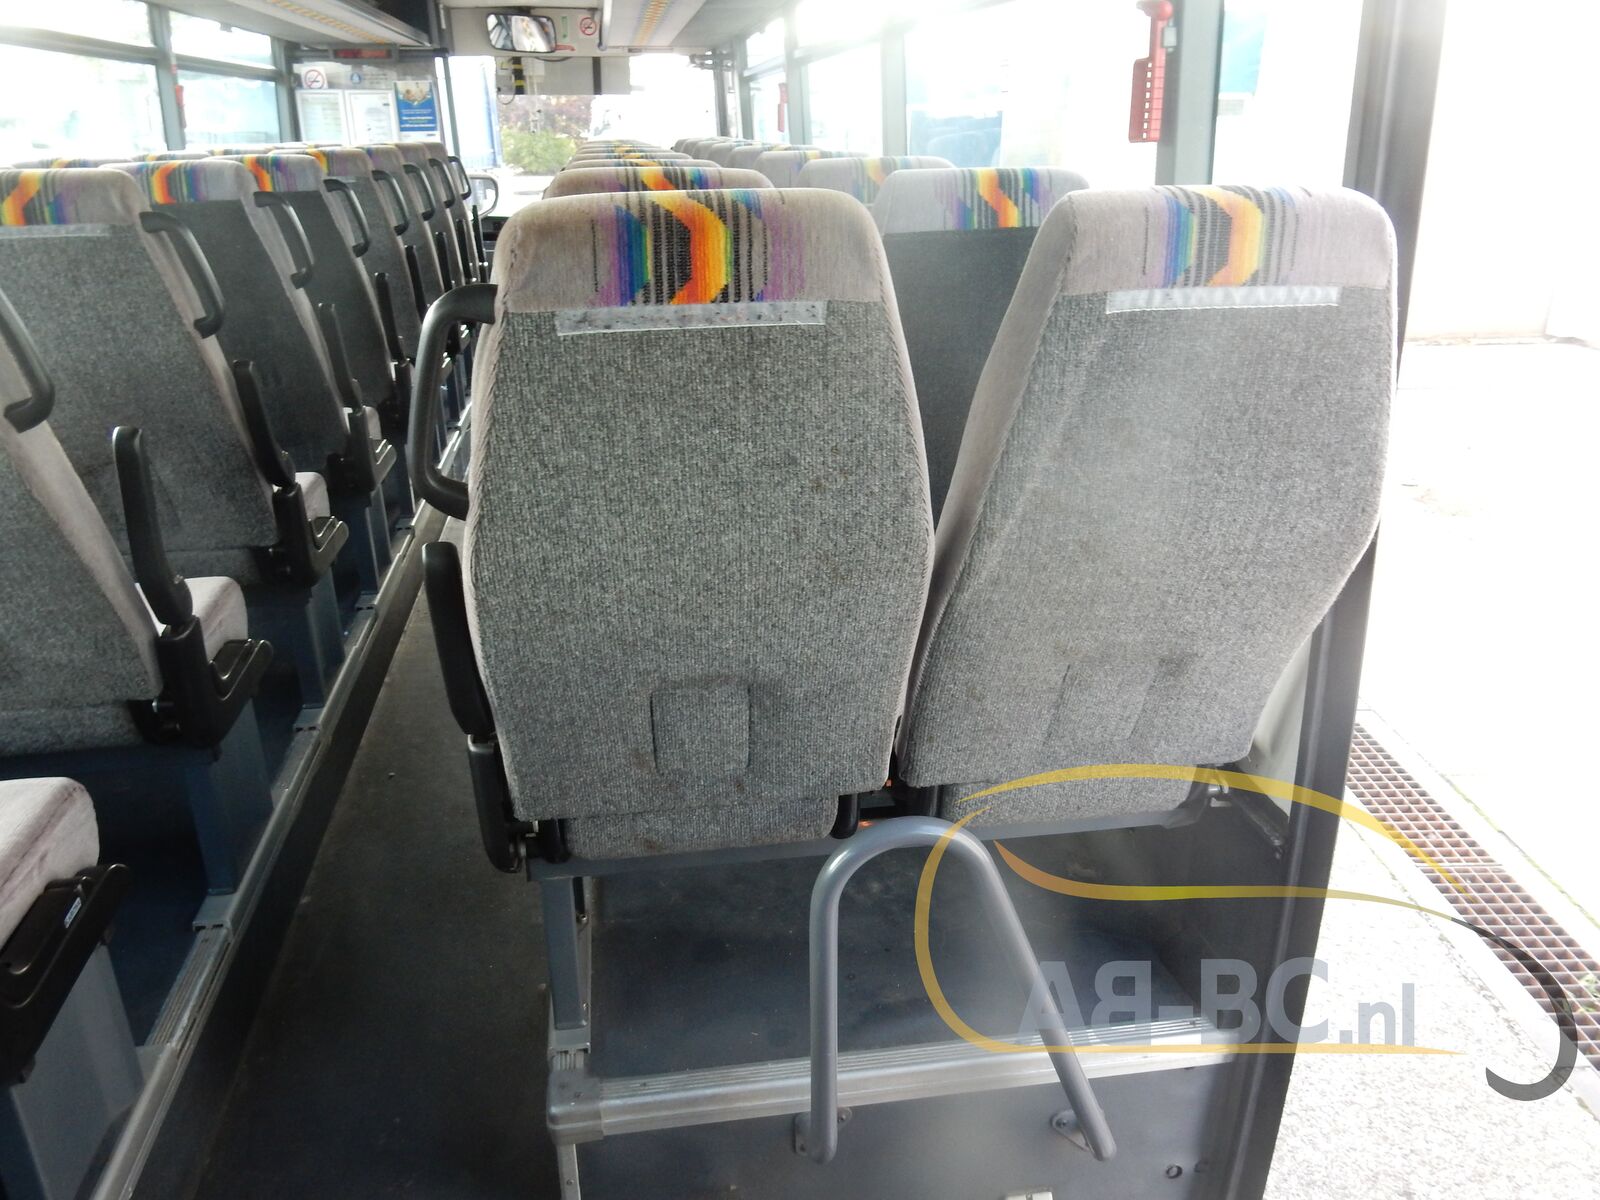 interurban-bus-IVECO-Irisbus-Axer-64-Seats---1634304998733371022_orig_412e91ebb625c0051002946a08a9d1b6--21101516322821825400